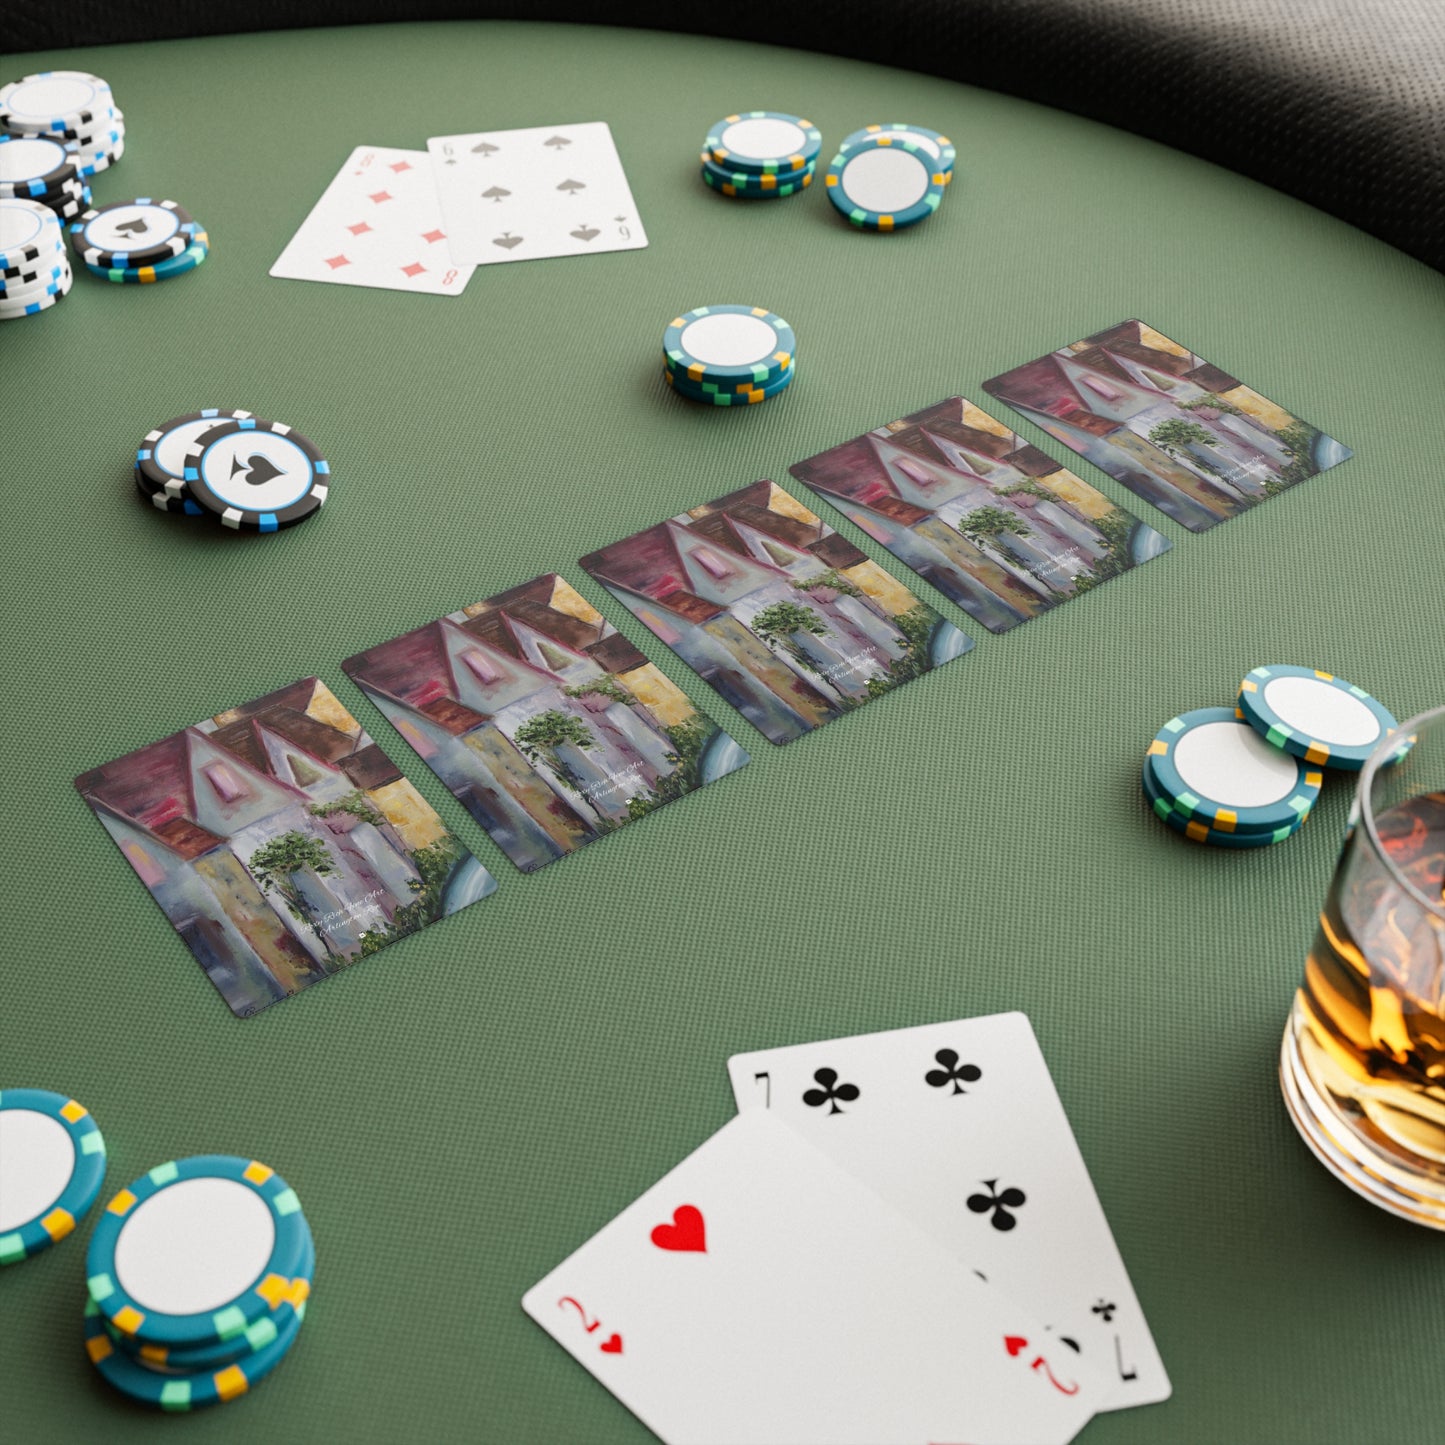 Arlington Row Bibury (Cotswolds) Cartes de poker/cartes à jouer